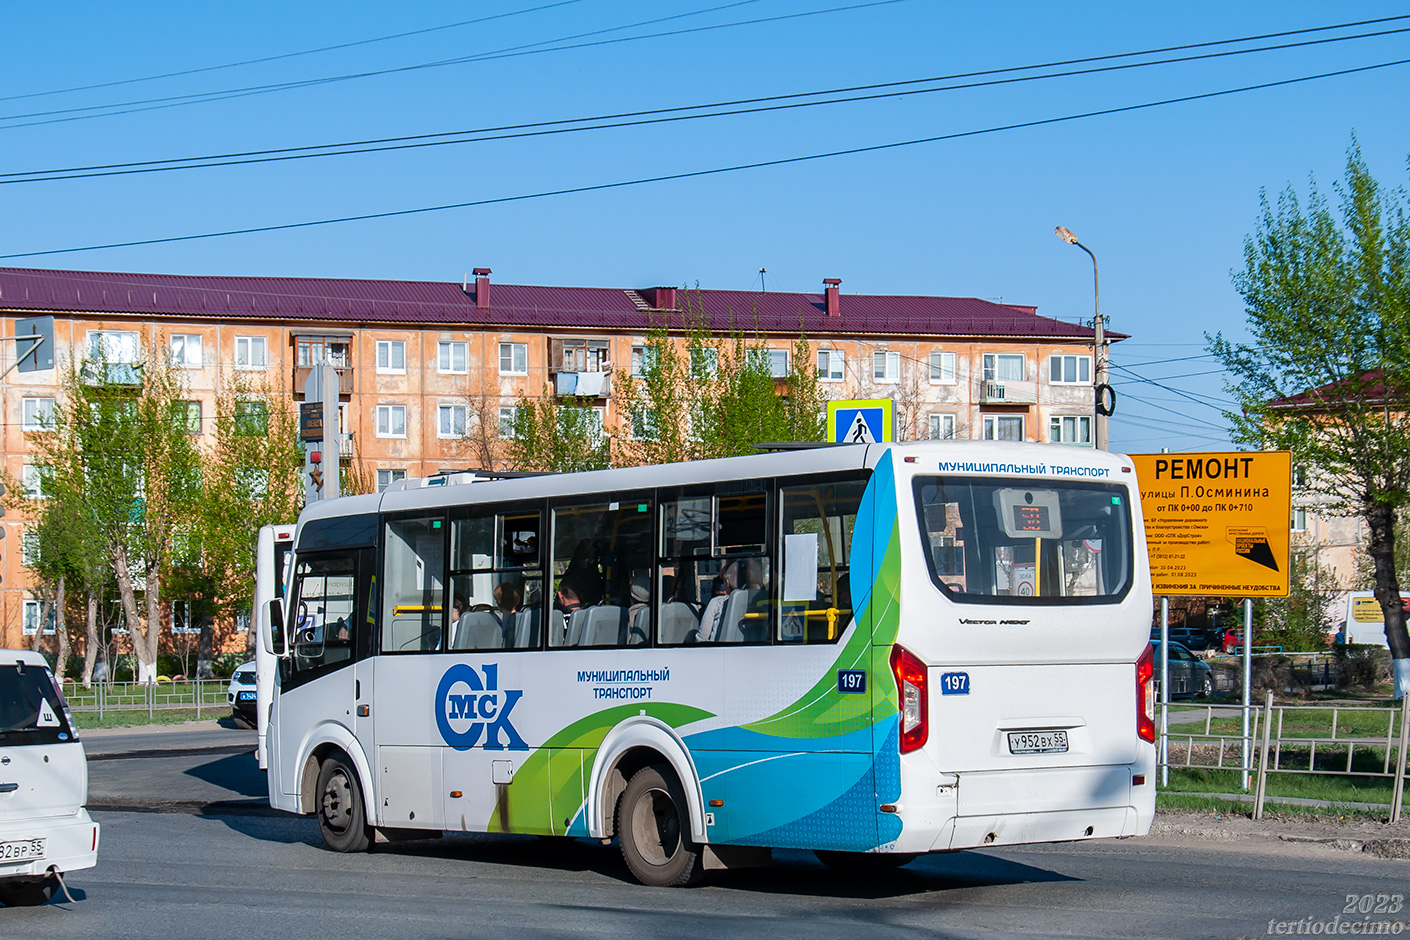 Omsk region, PAZ-320435-04 "Vector Next" # 197